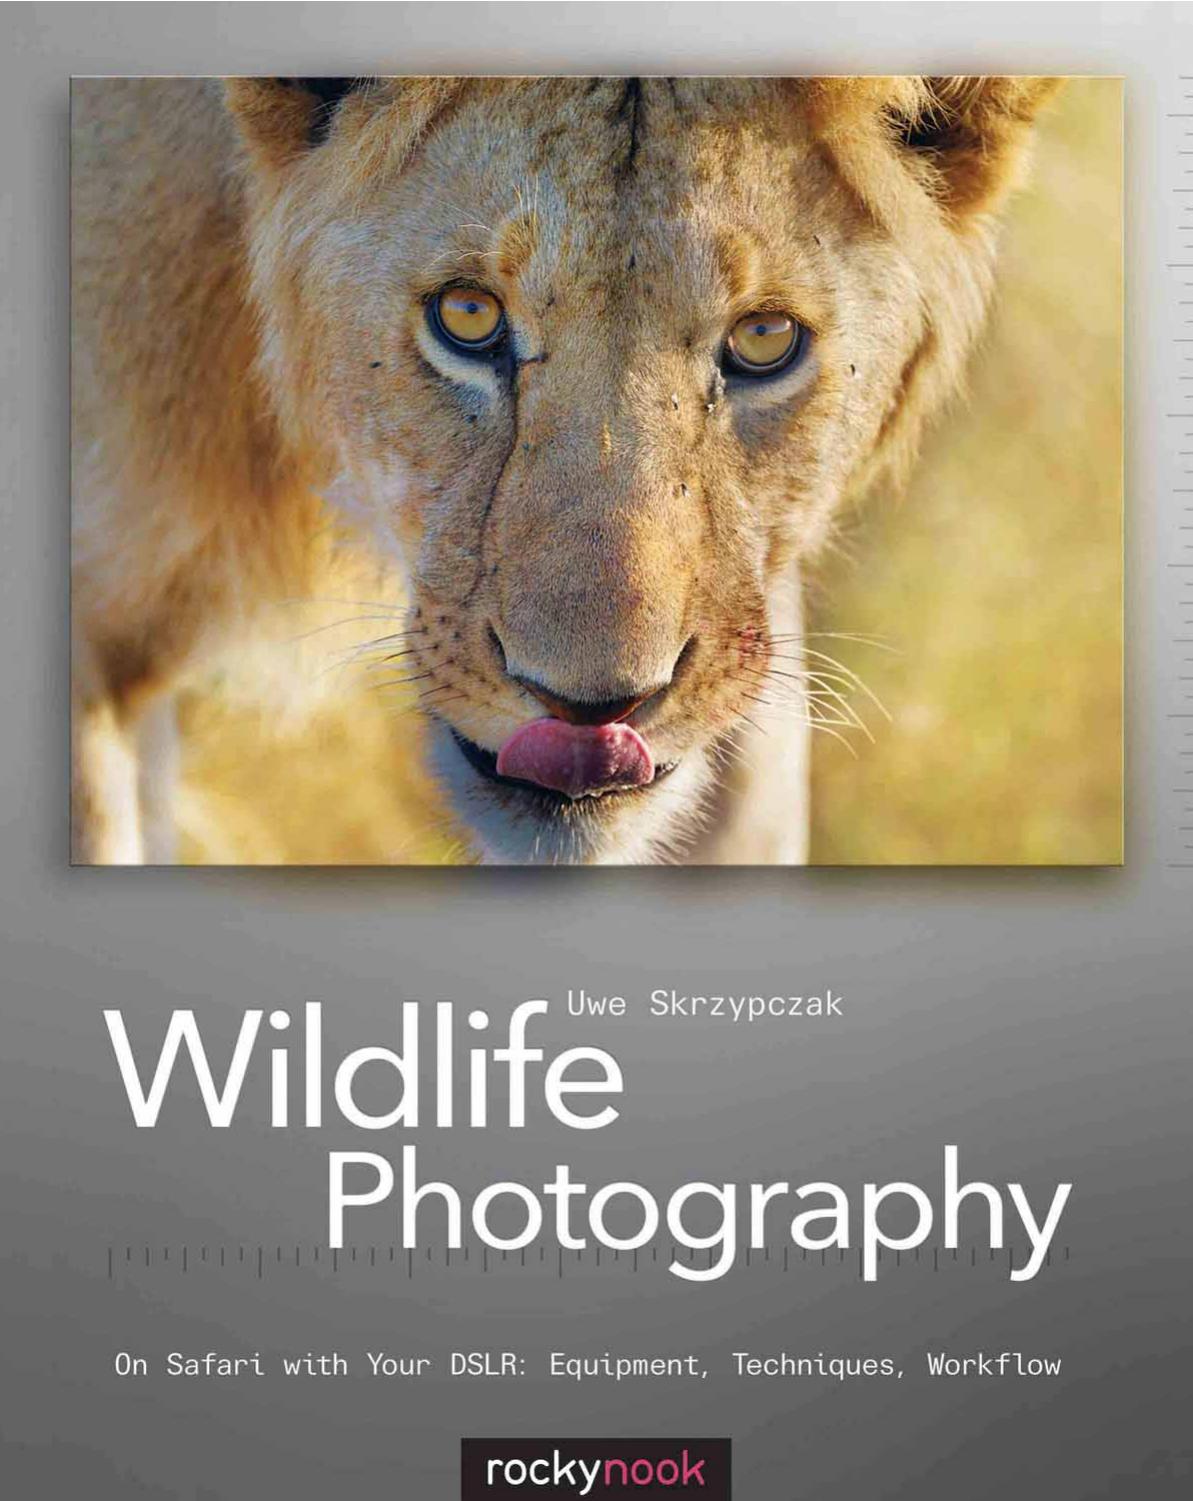 Wildlife Photography by Uwe Skrzypczak